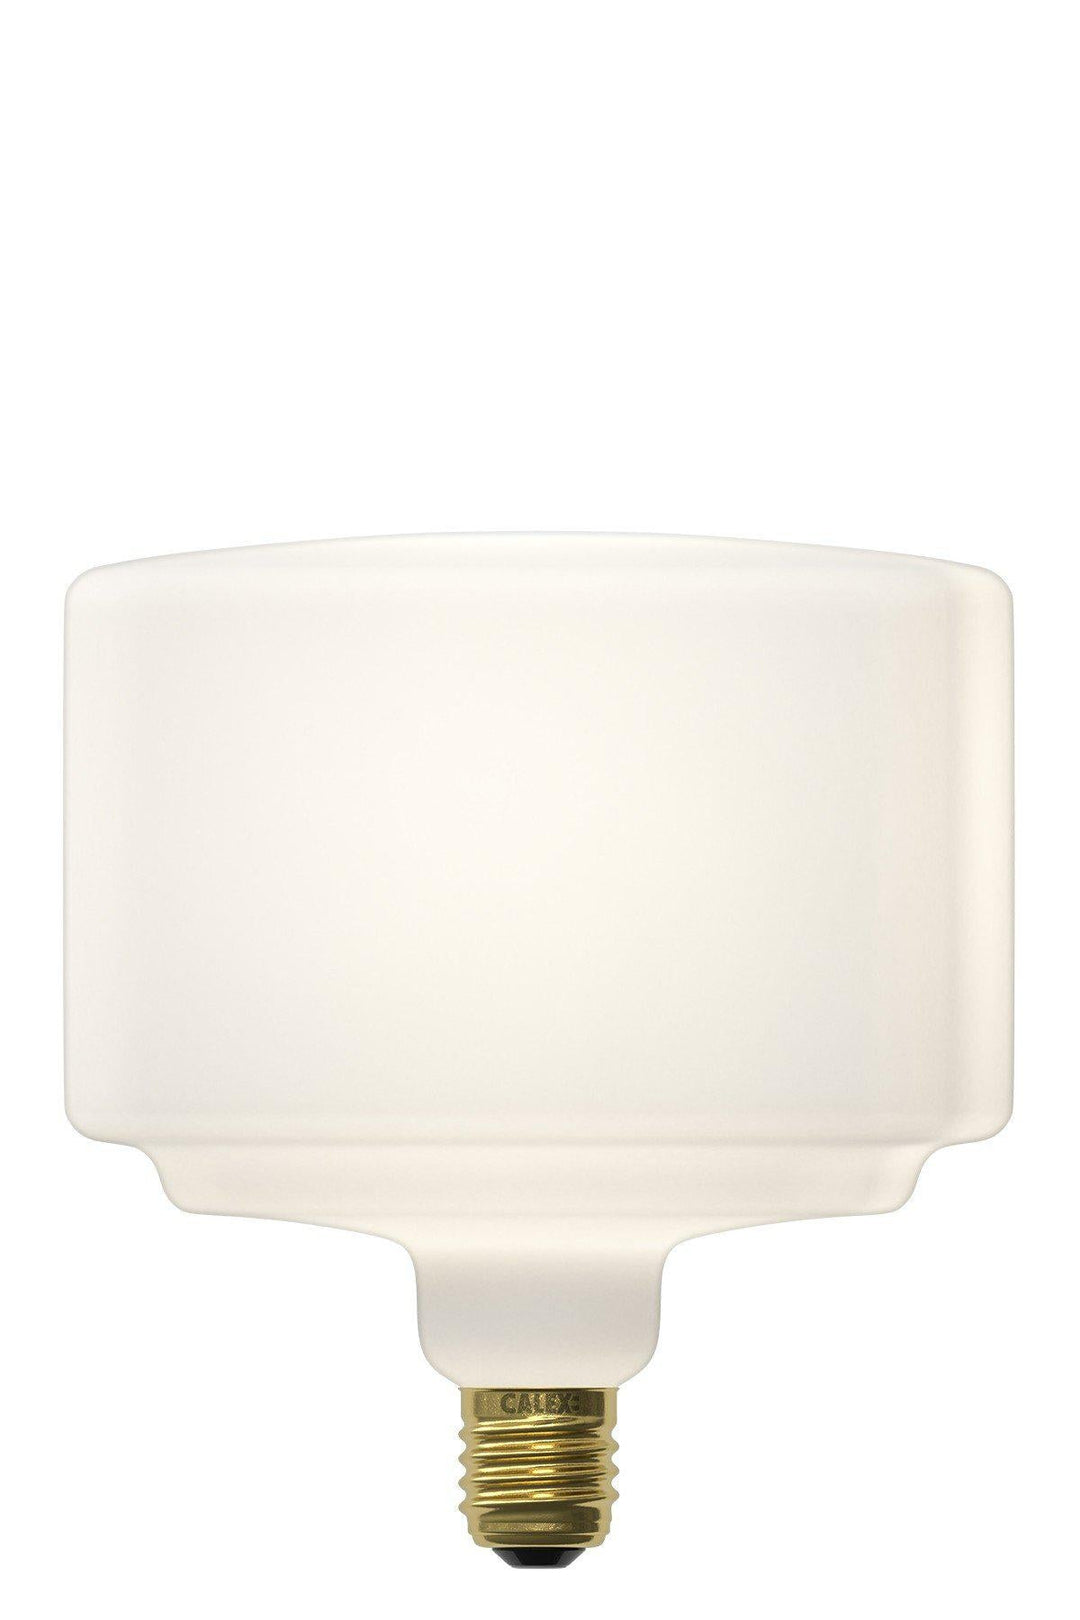 Calex 426104 | LED White Arctic Motala Bulb | E27 | 6W